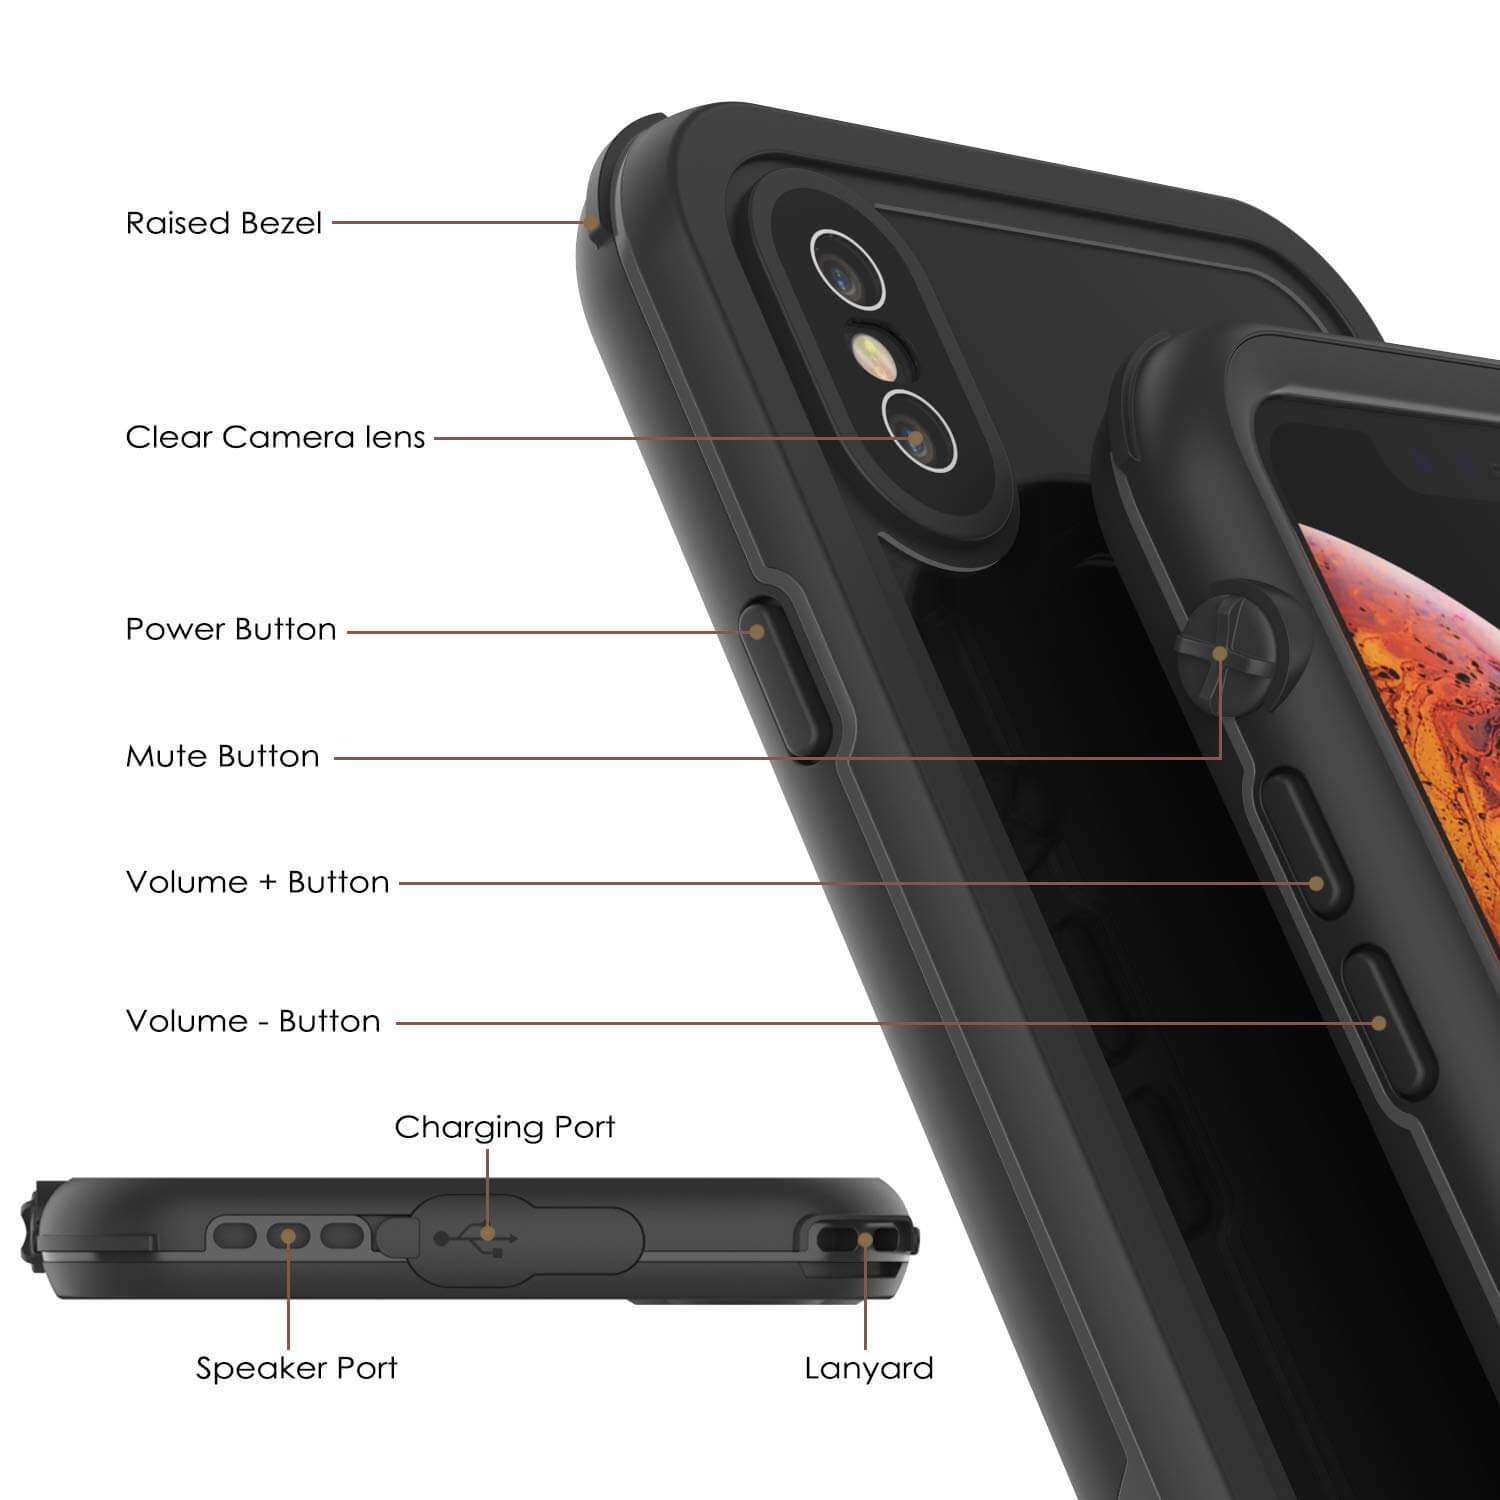 iPhone XS Waterproof IP68 Case, Punkcase [Black] [Rapture Series]  W/Built in Screen Protector